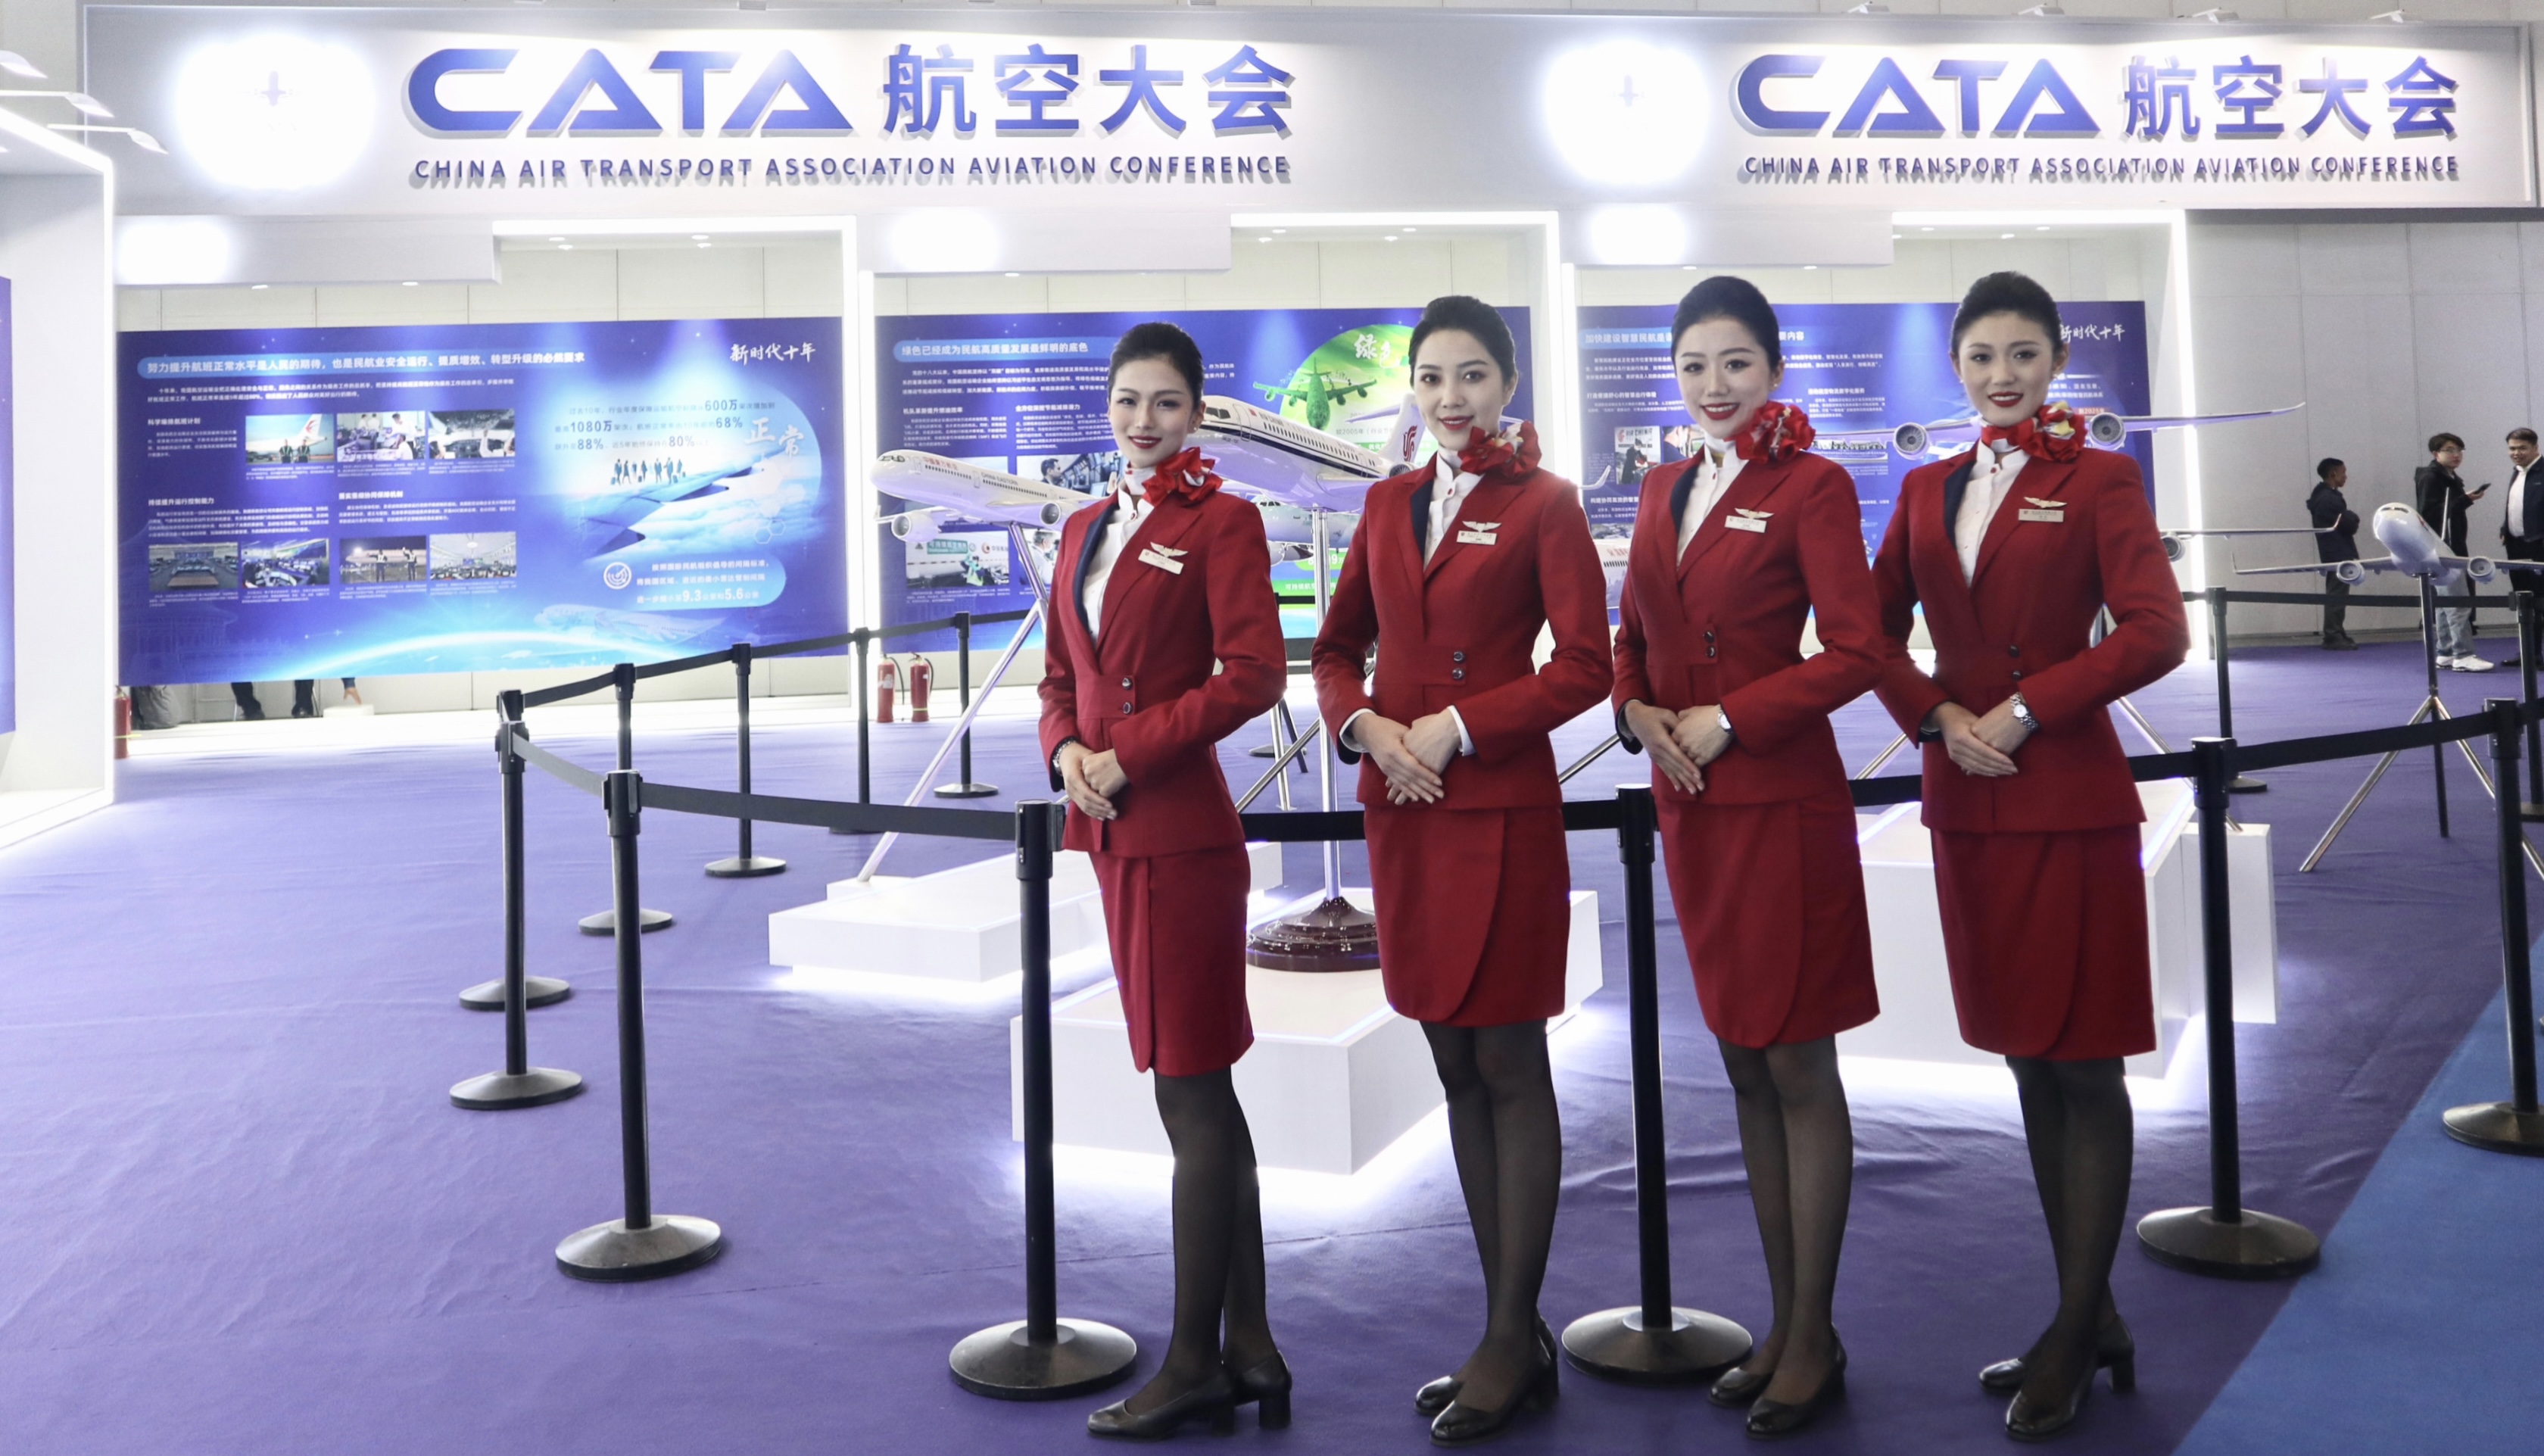 龙江航空亮相CATA大会，深入展会共谋发展